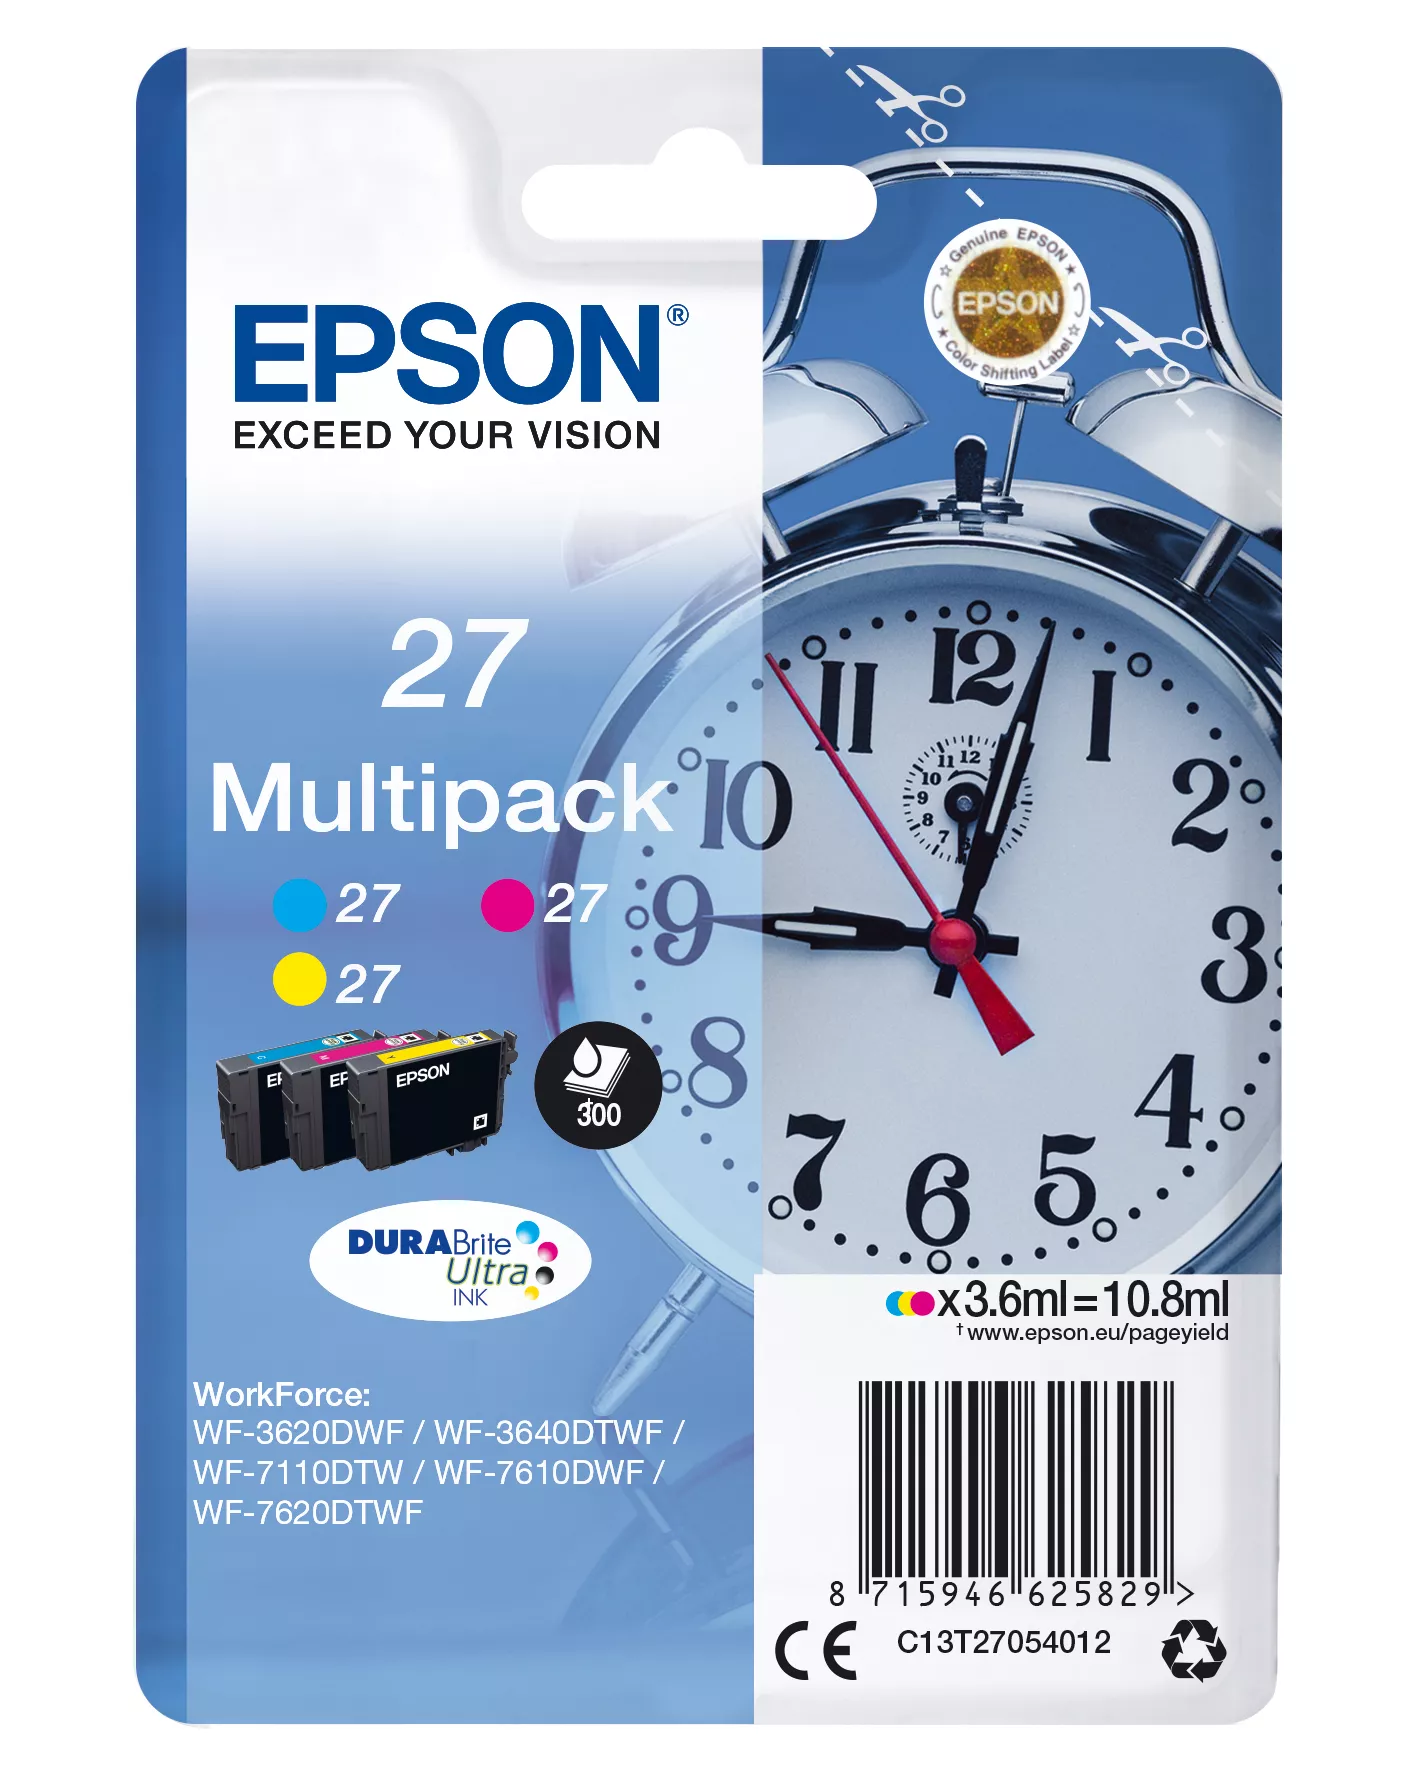 Achat EPSON 27 cartouche d encre cyan, magenta et jaune capacité et autres produits de la marque Epson